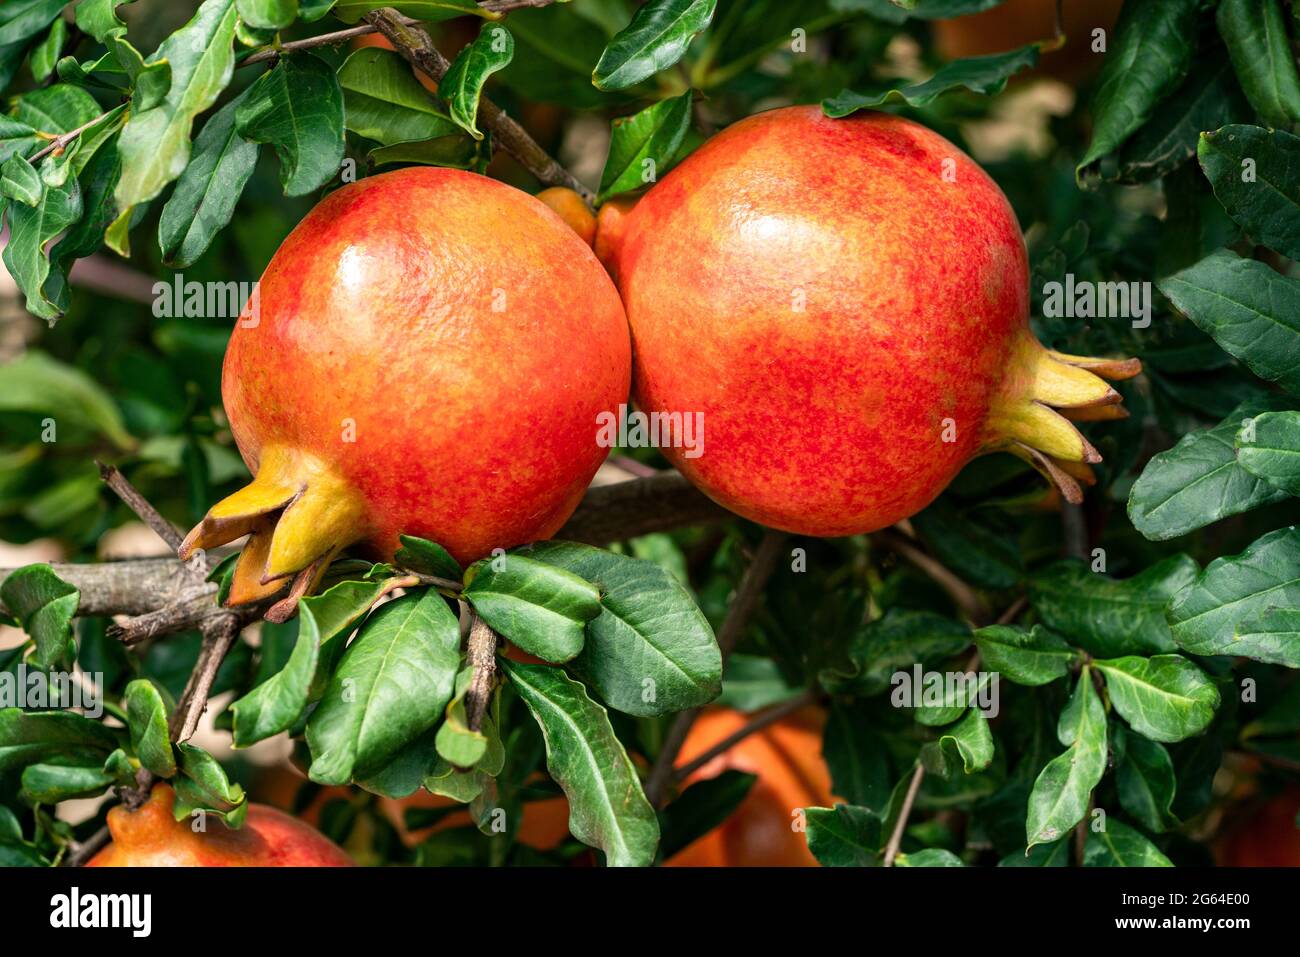 Nahaufnahme mit einem Paar roter Granatapfelfrüchte, hängender Punica Granatum, die mit grünen Blättern auf einem Zweig in der Gartenbaufarm wächst. Stockfoto